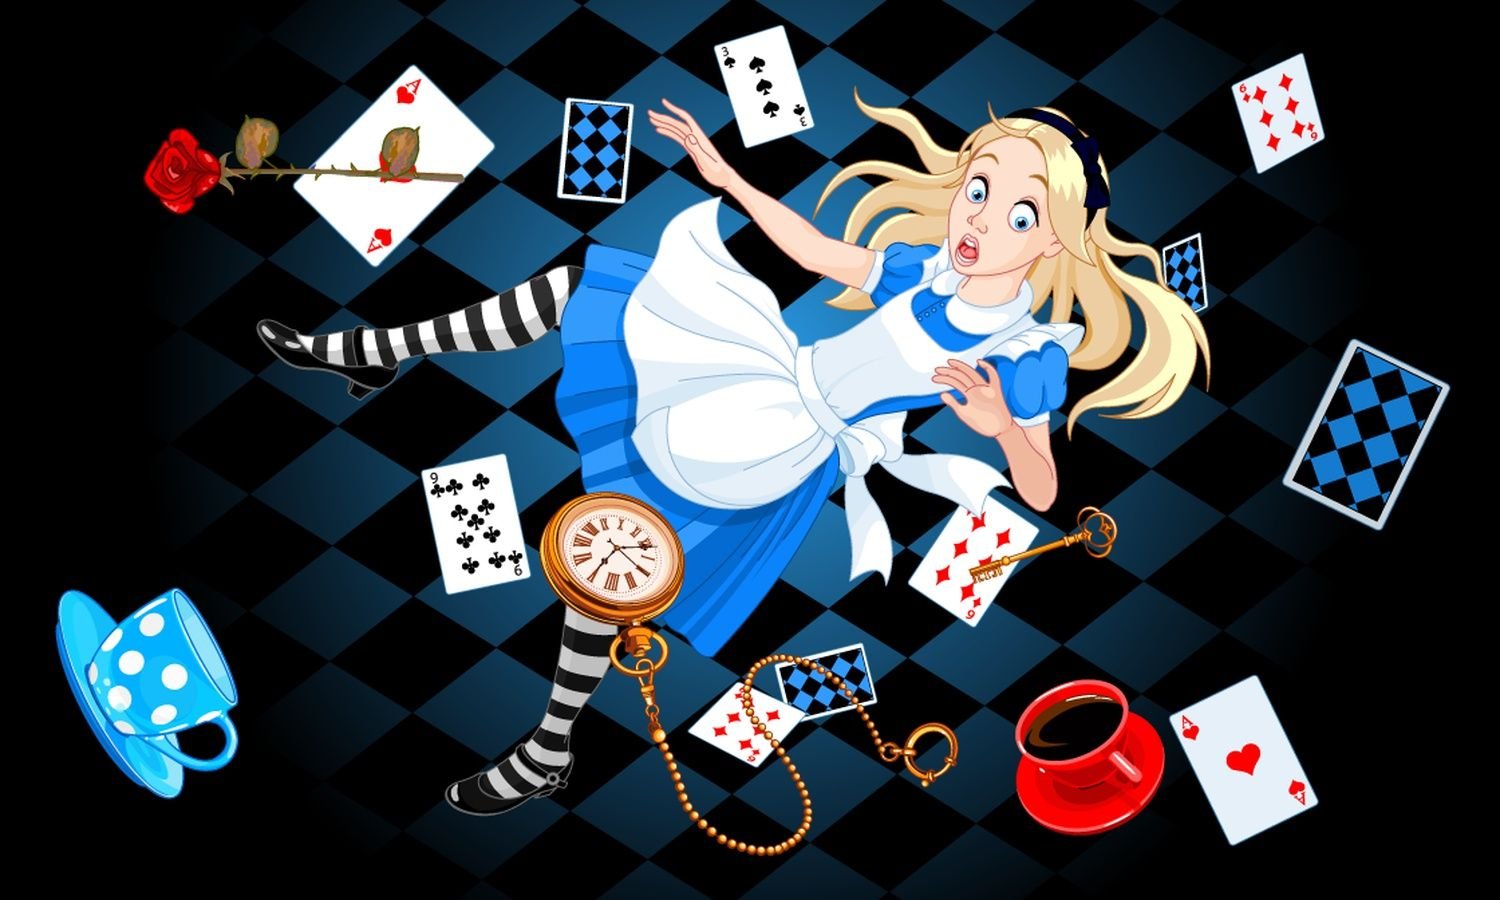 Как играть в карты с алисой. Алиса в стране чудес. Алиса в стране чудес Алиса. Кэрролл Льюис "Алиса в стране чудес". Алиса в стране чудес персонажи иллюстрации.